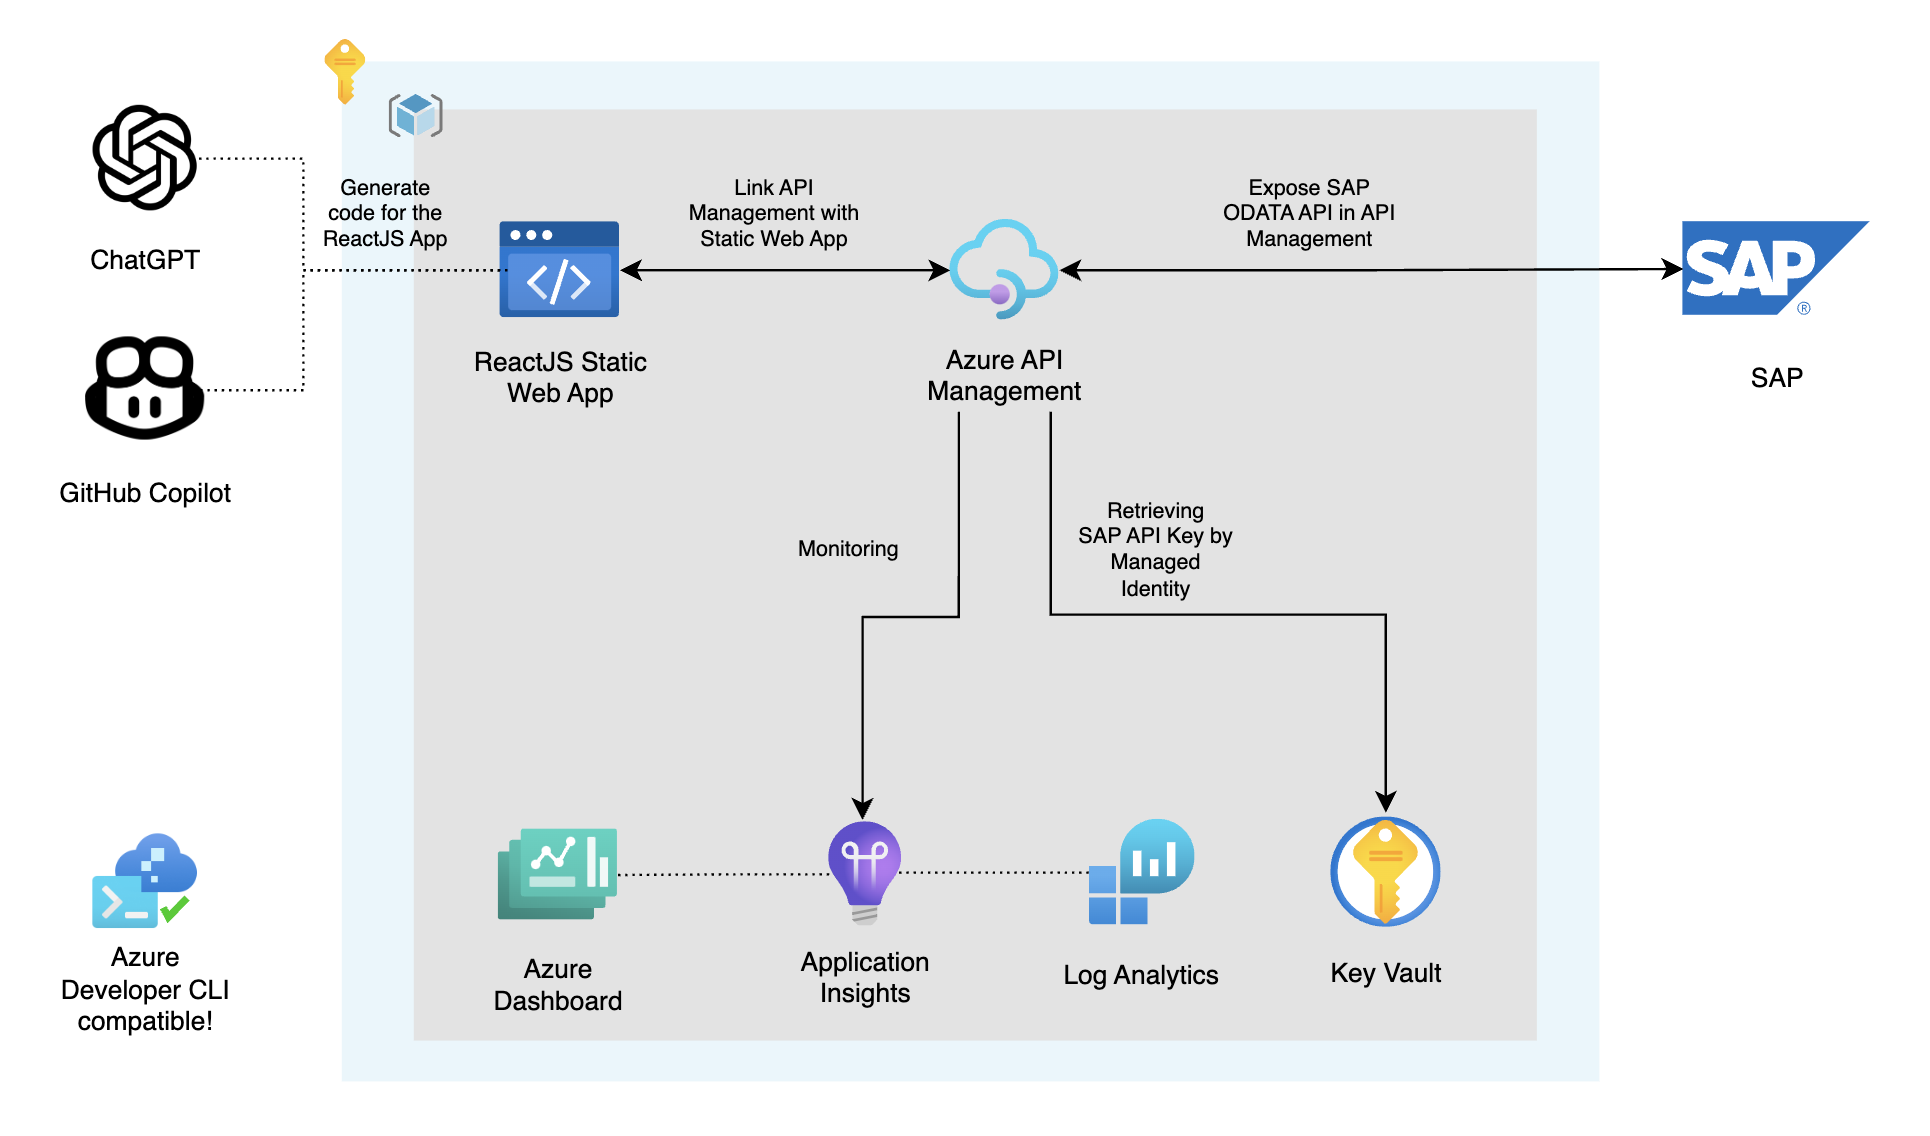 React Web App with Azure API Management exposing SAP OData APIs